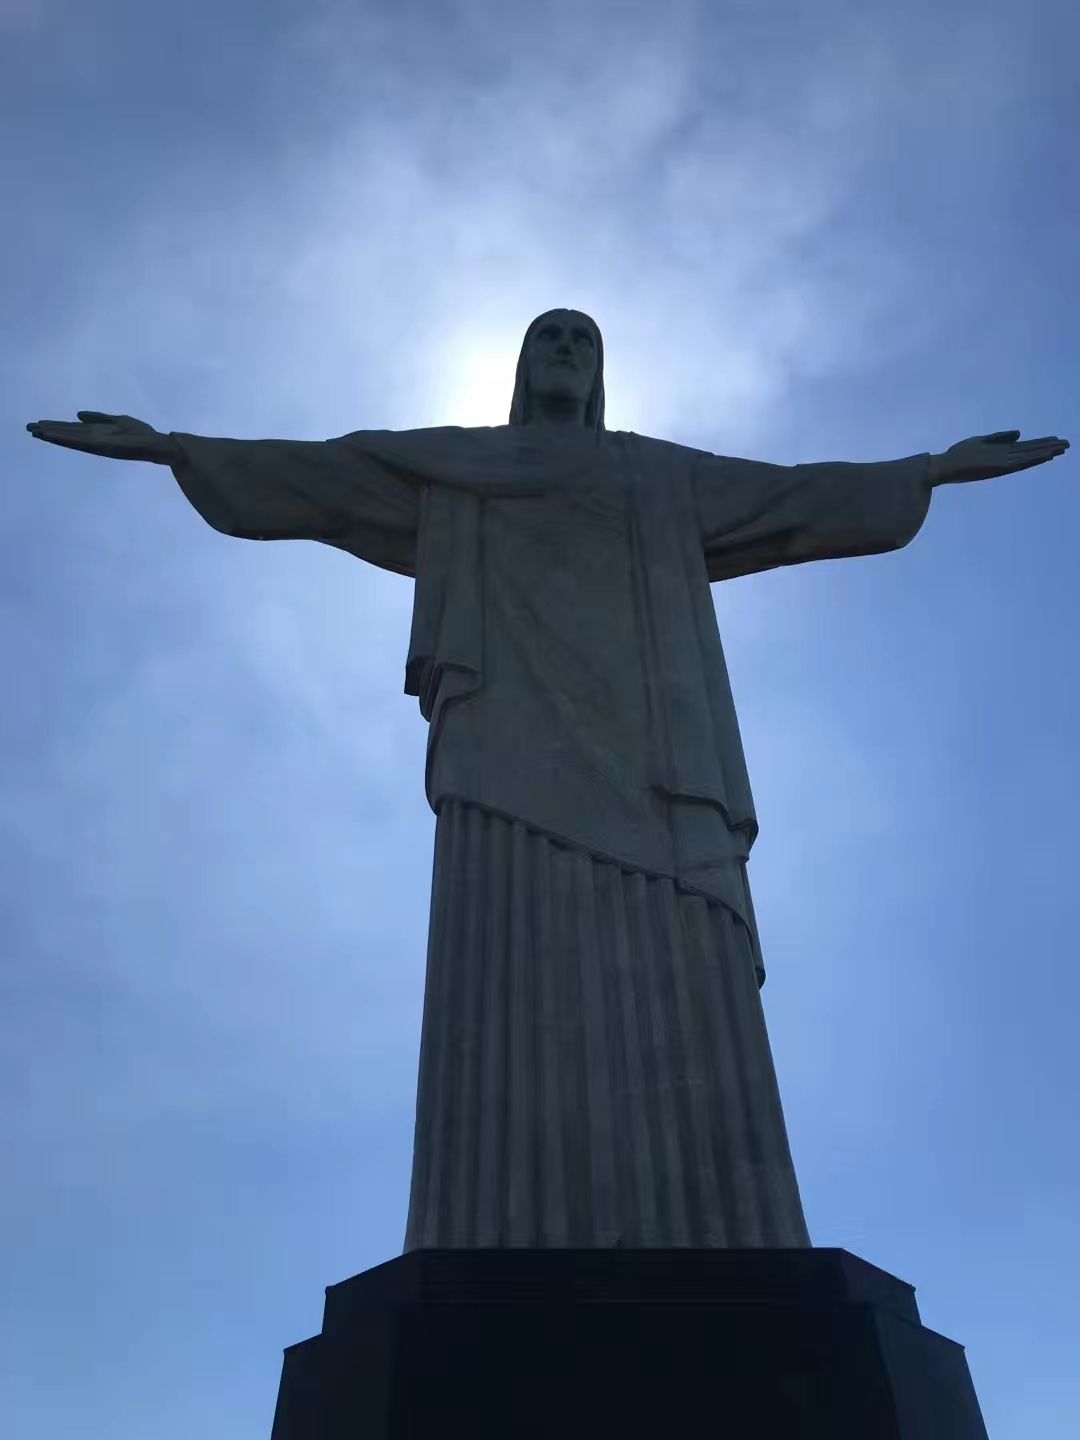 2019耶稣山_旅游攻略_门票_地址_游记点评,里约热内卢旅游景点推荐 - 去哪儿攻略社区